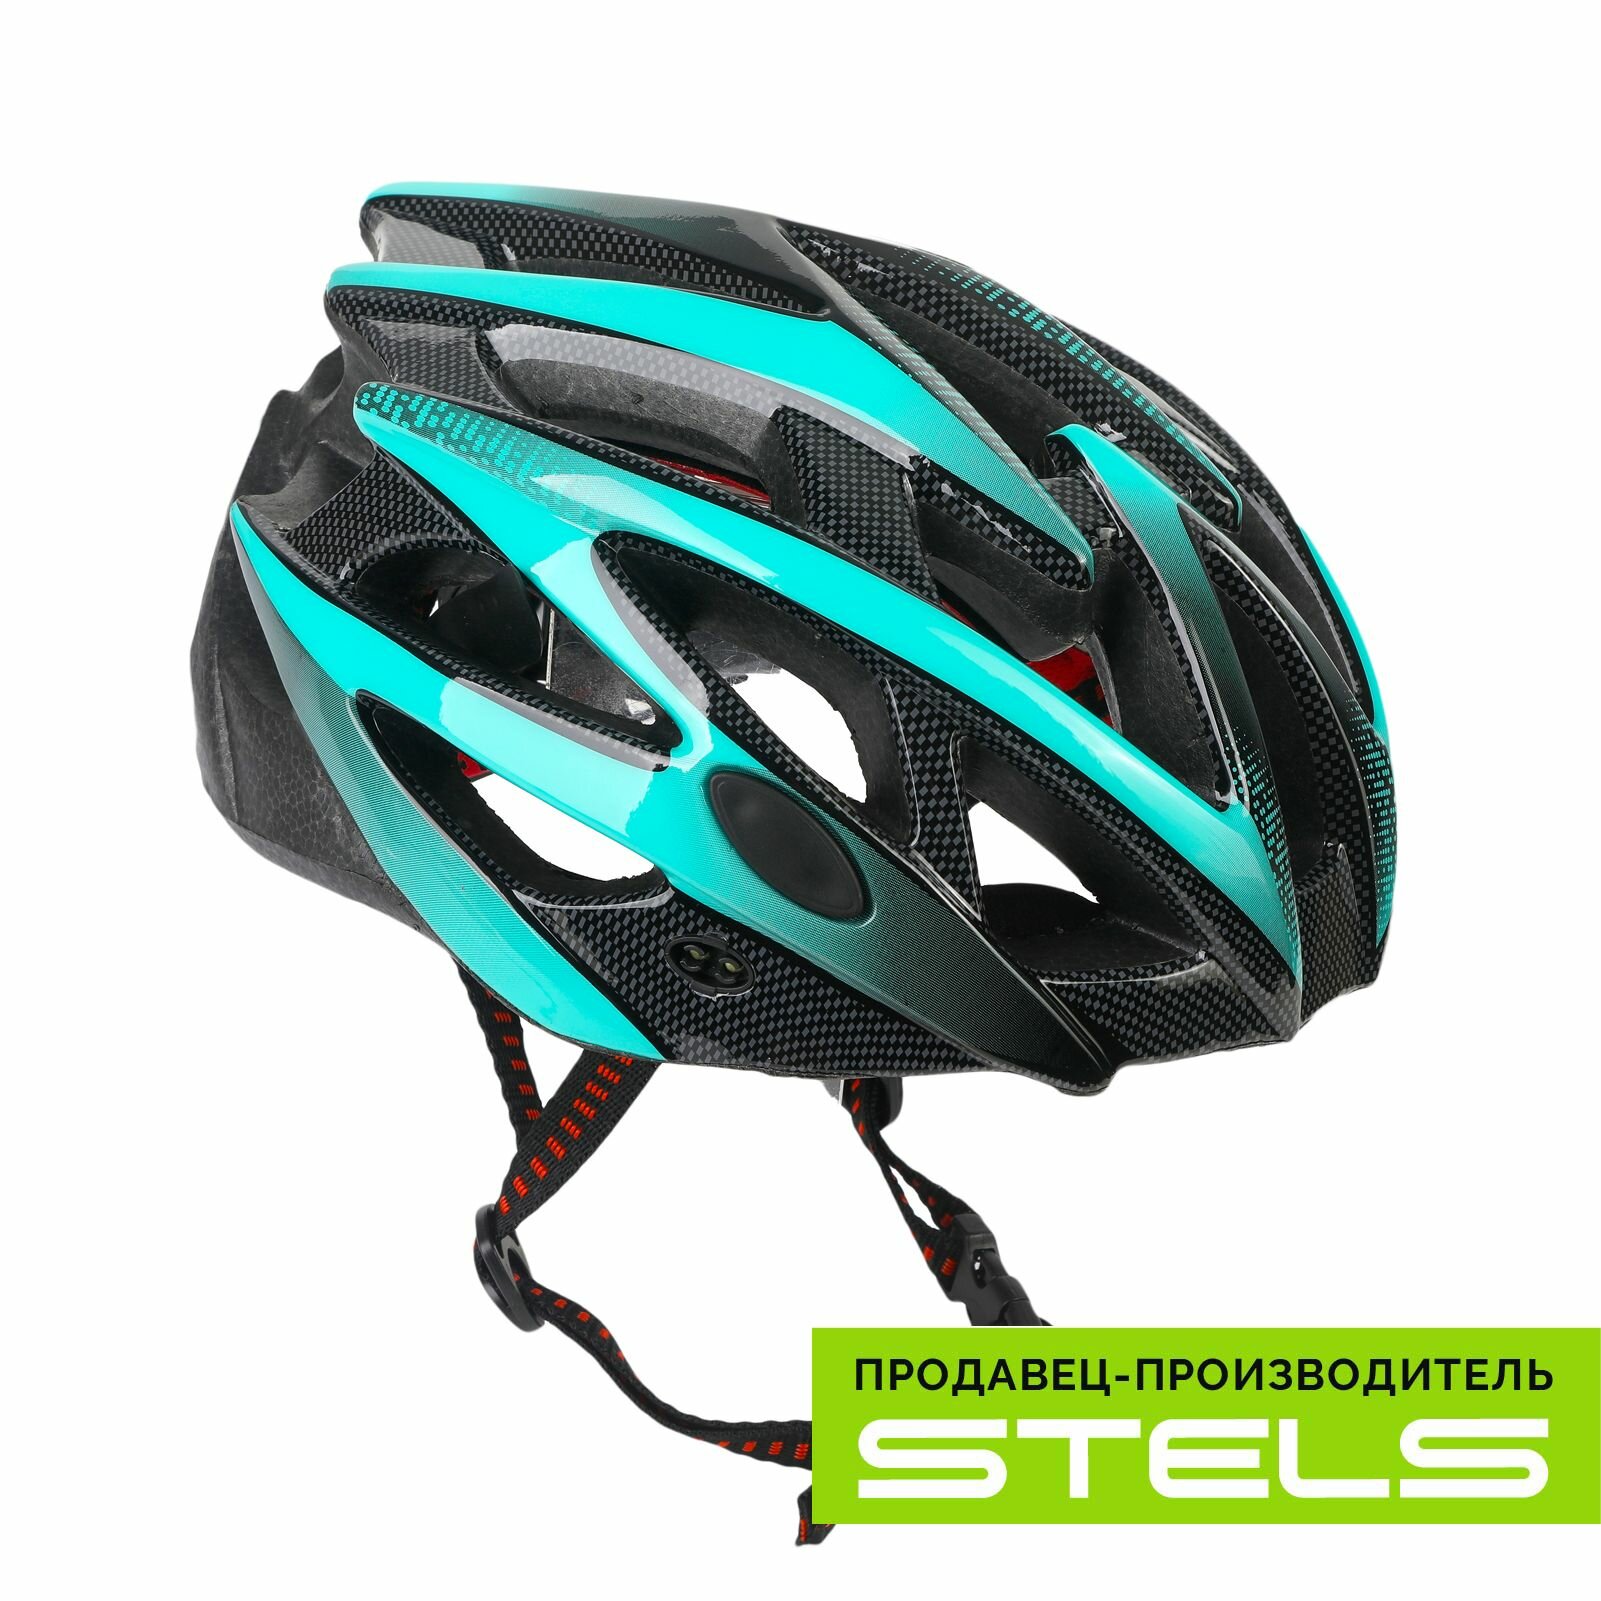 Шлем защитный для катания на велосипеде FSD-HL056 (in-mold) бирюзово-чёрный, размер L NEW (item:010)